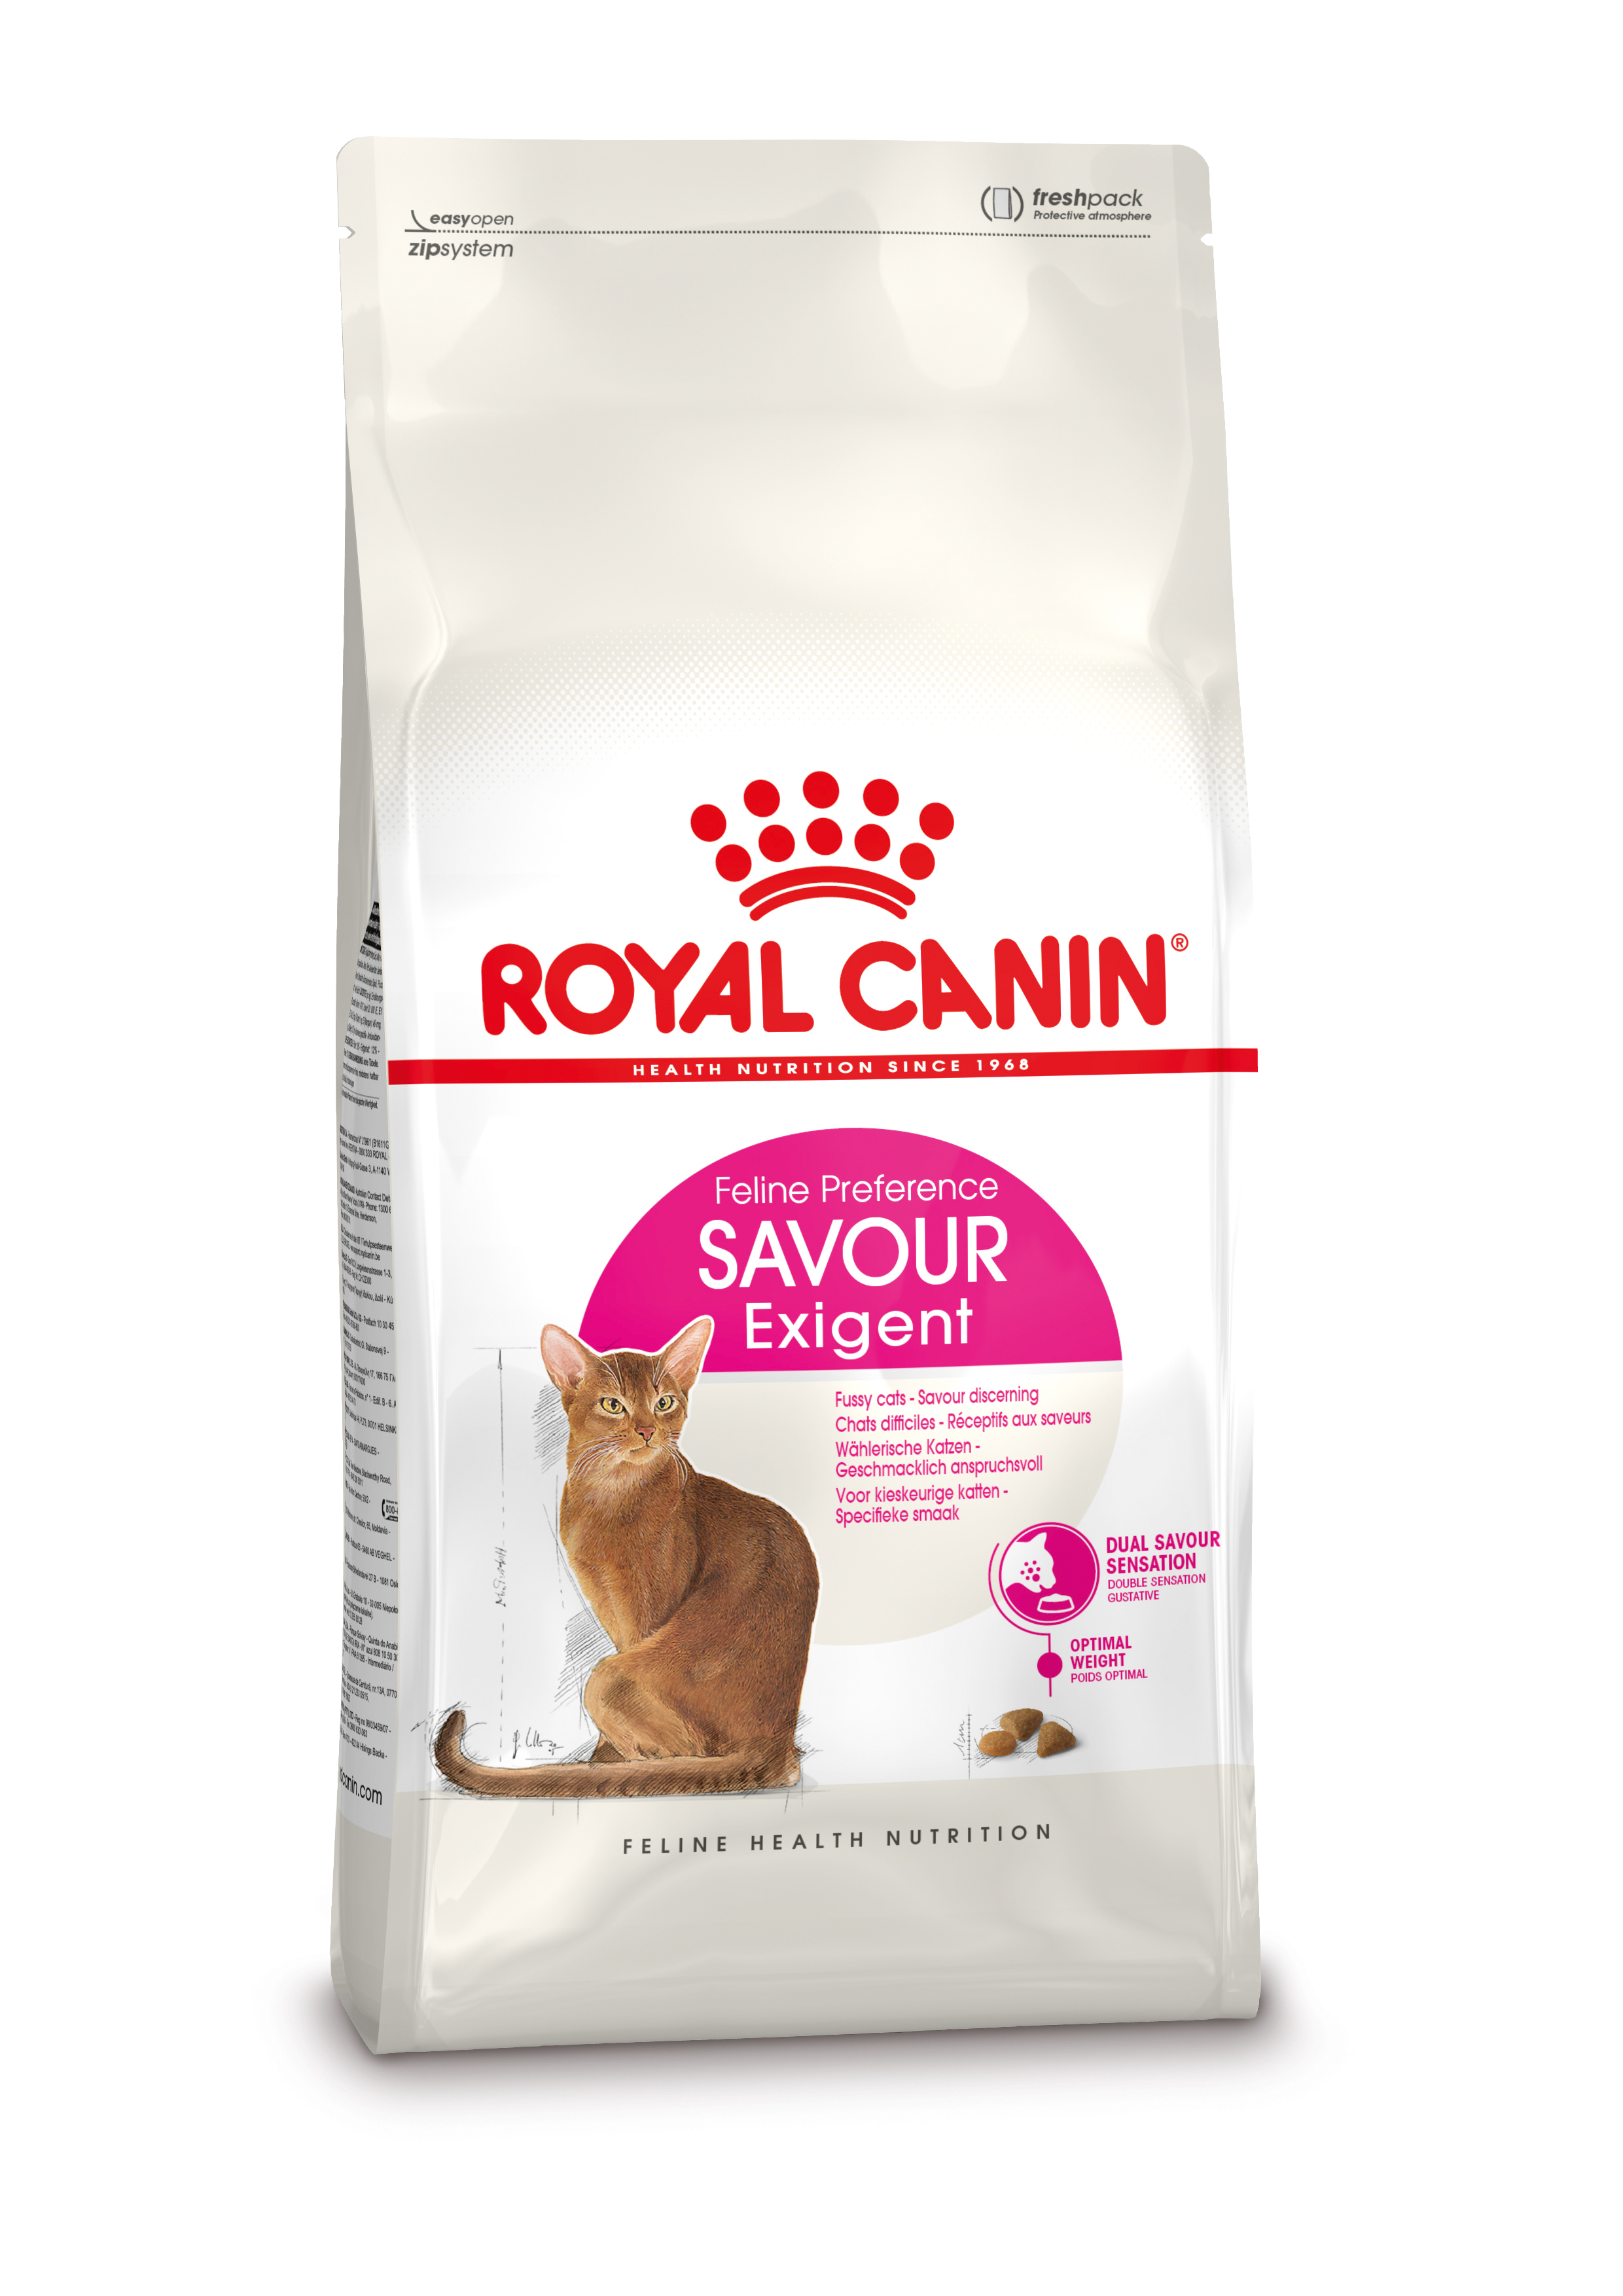 Afbeelding Royal Canin Savour Exigent kattenvoer 10 + 2 kg door Brekz.nl